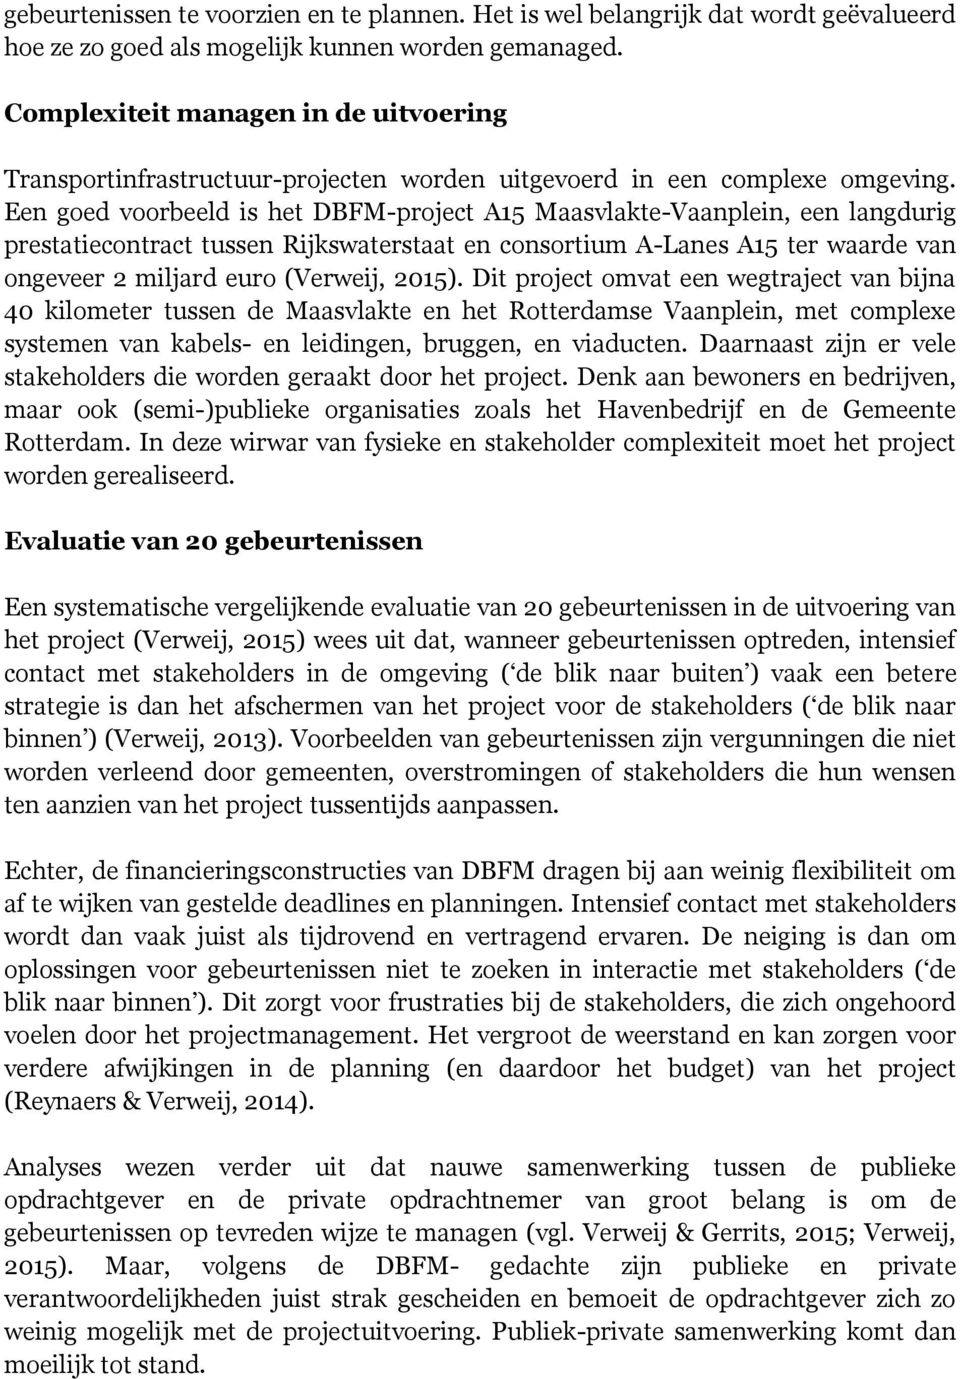 Een goed voorbeeld is het DBFM-project A15 Maasvlakte-Vaanplein, een langdurig prestatiecontract tussen Rijkswaterstaat en consortium A-Lanes A15 ter waarde van ongeveer 2 miljard euro (Verweij,